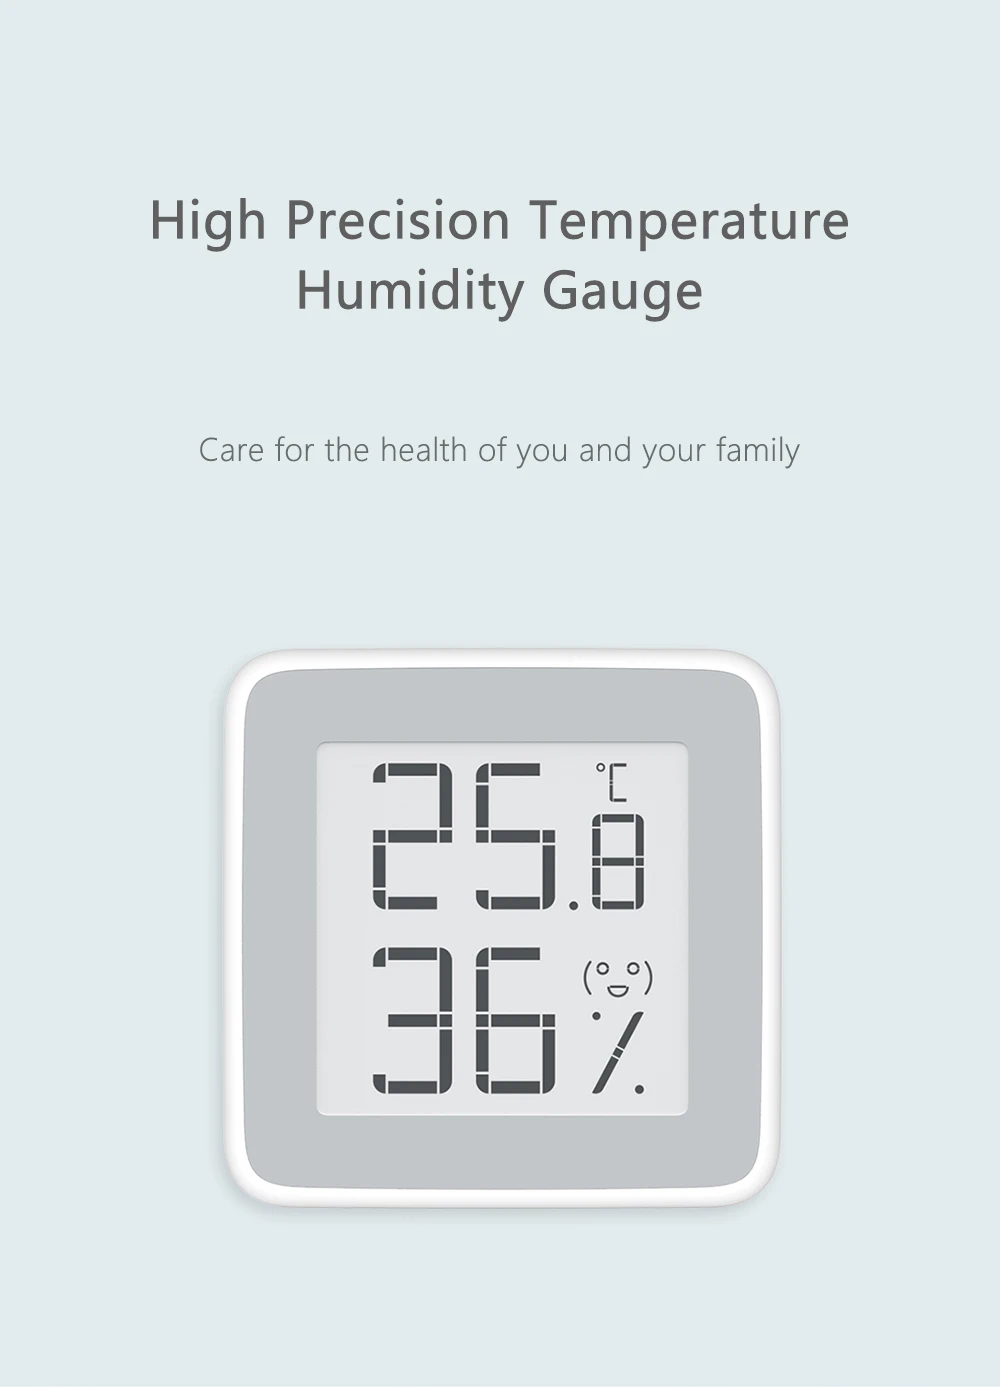 Цифровой ЖК-дисплей бытовой термометр высокоточный датчик влажности температуры погода Беспроводная станция будильник